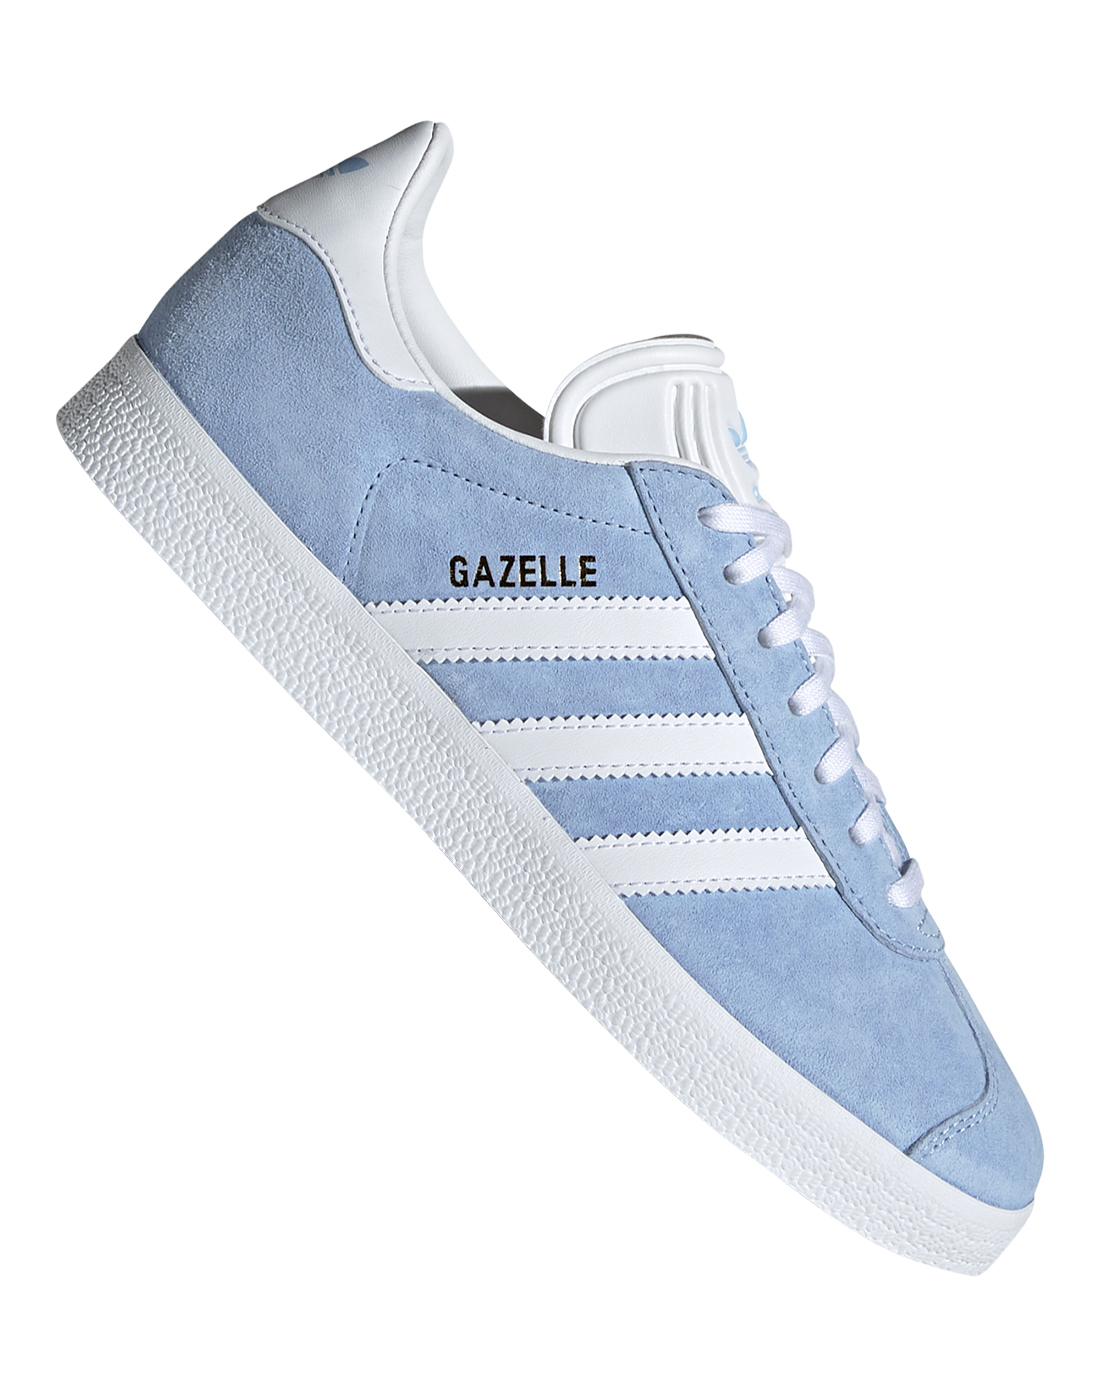 adidas gazelle blue womens